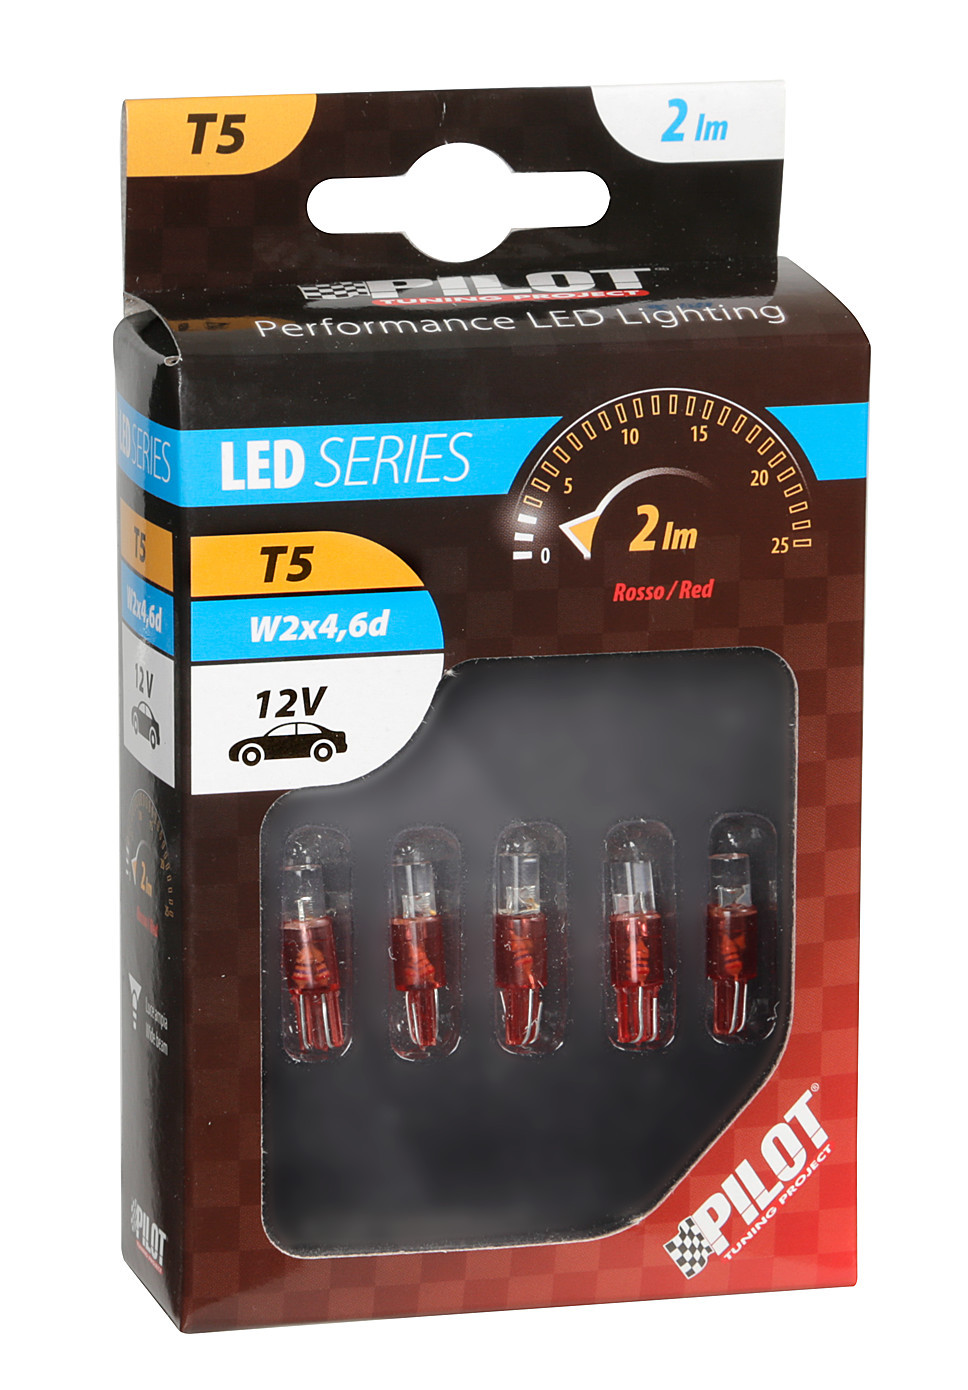 Bec tip LED 12V iluminat bord soclu pl. T5 W2x4,6d 5buc - Rosu thumb